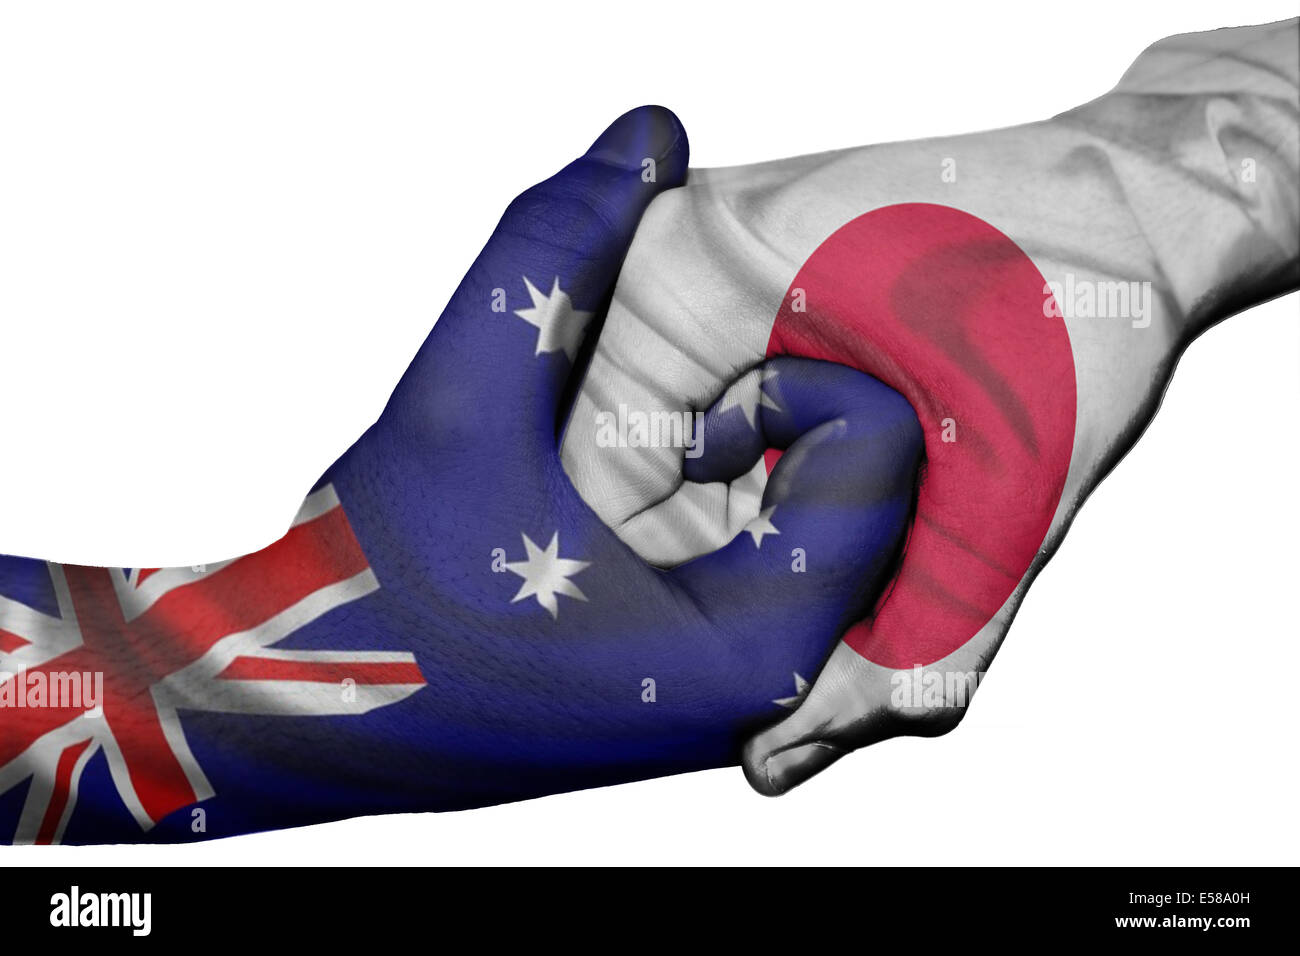 Handshake diplomatiche tra paesi: bandiere di Australia e Giappone sovradipinta le due mani Foto Stock